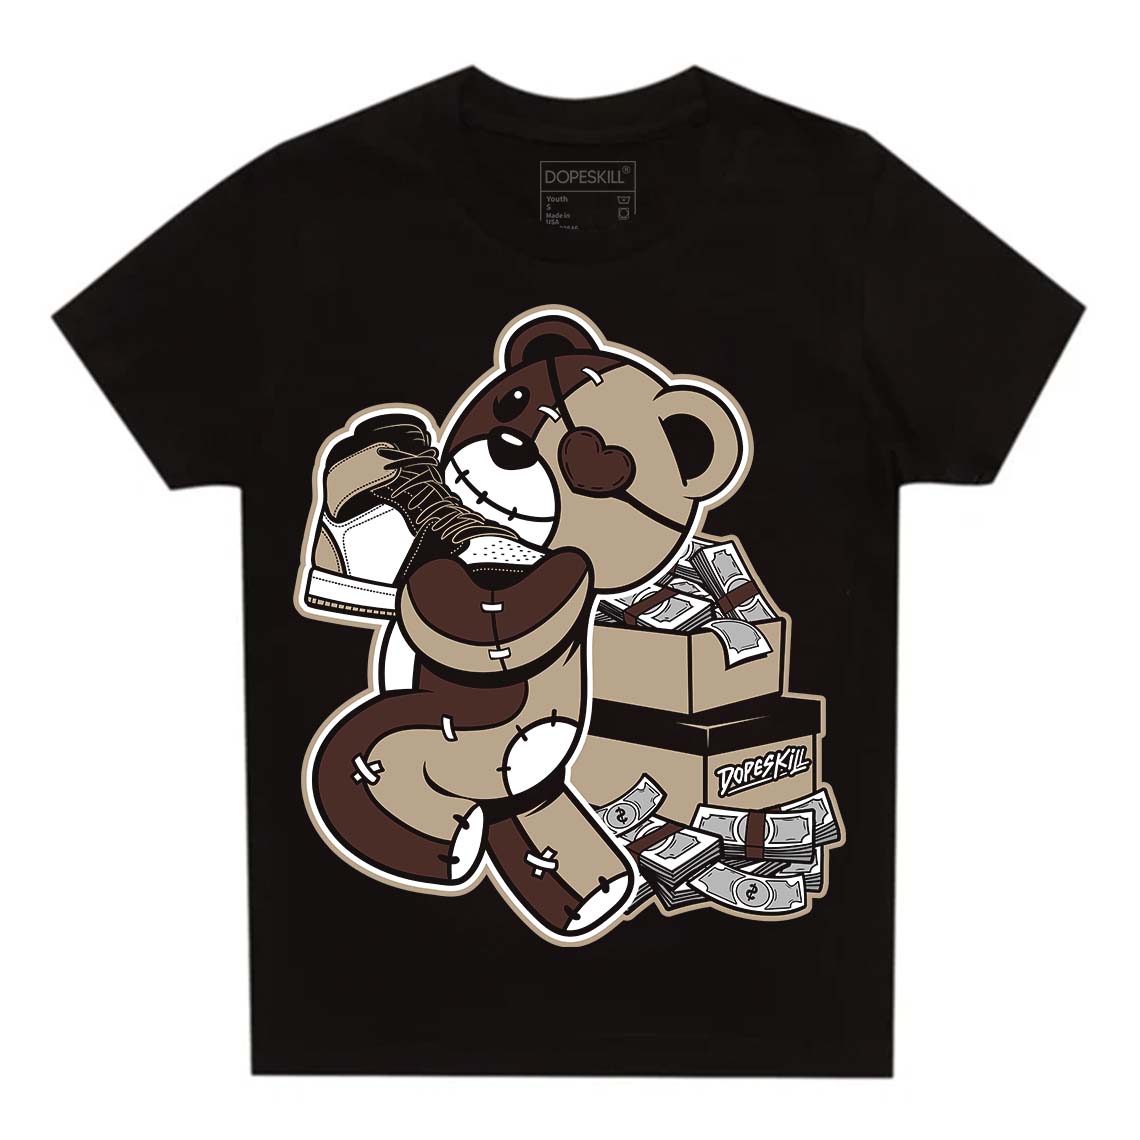 Jordan 1 High OG “Latte” DopeSkill Toddler Kids T-shirt Bear Steals Sneaker Graphic Streetwear - Black